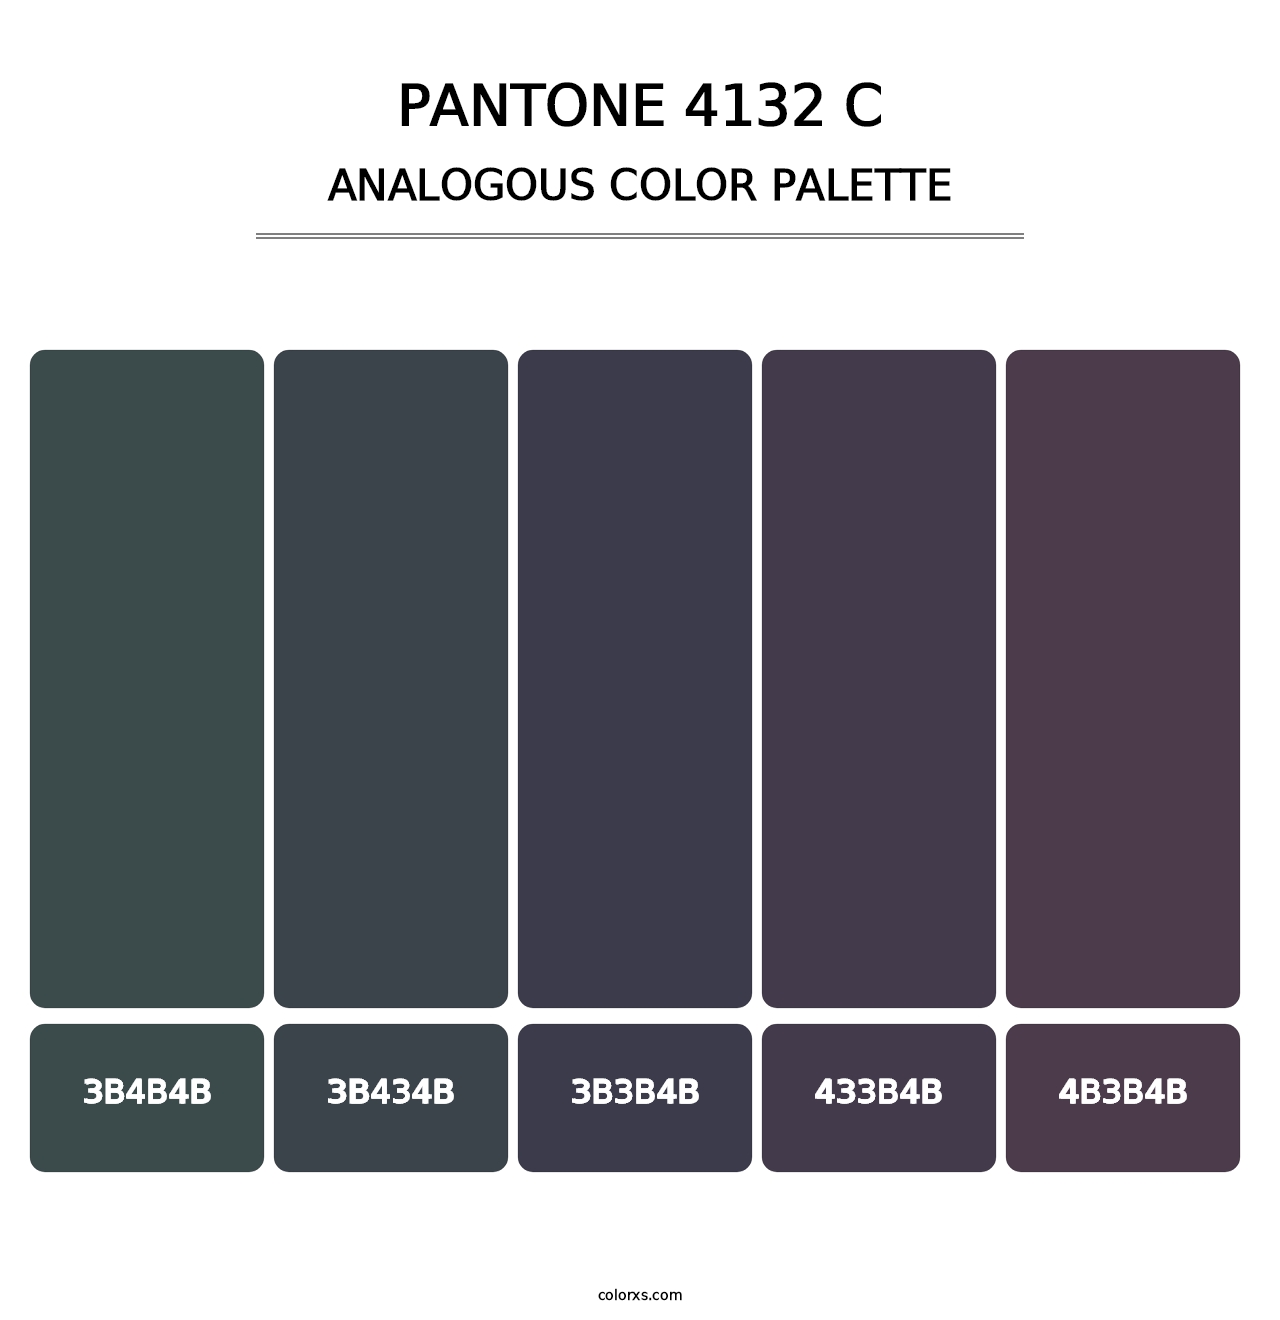 PANTONE 4132 C - Analogous Color Palette